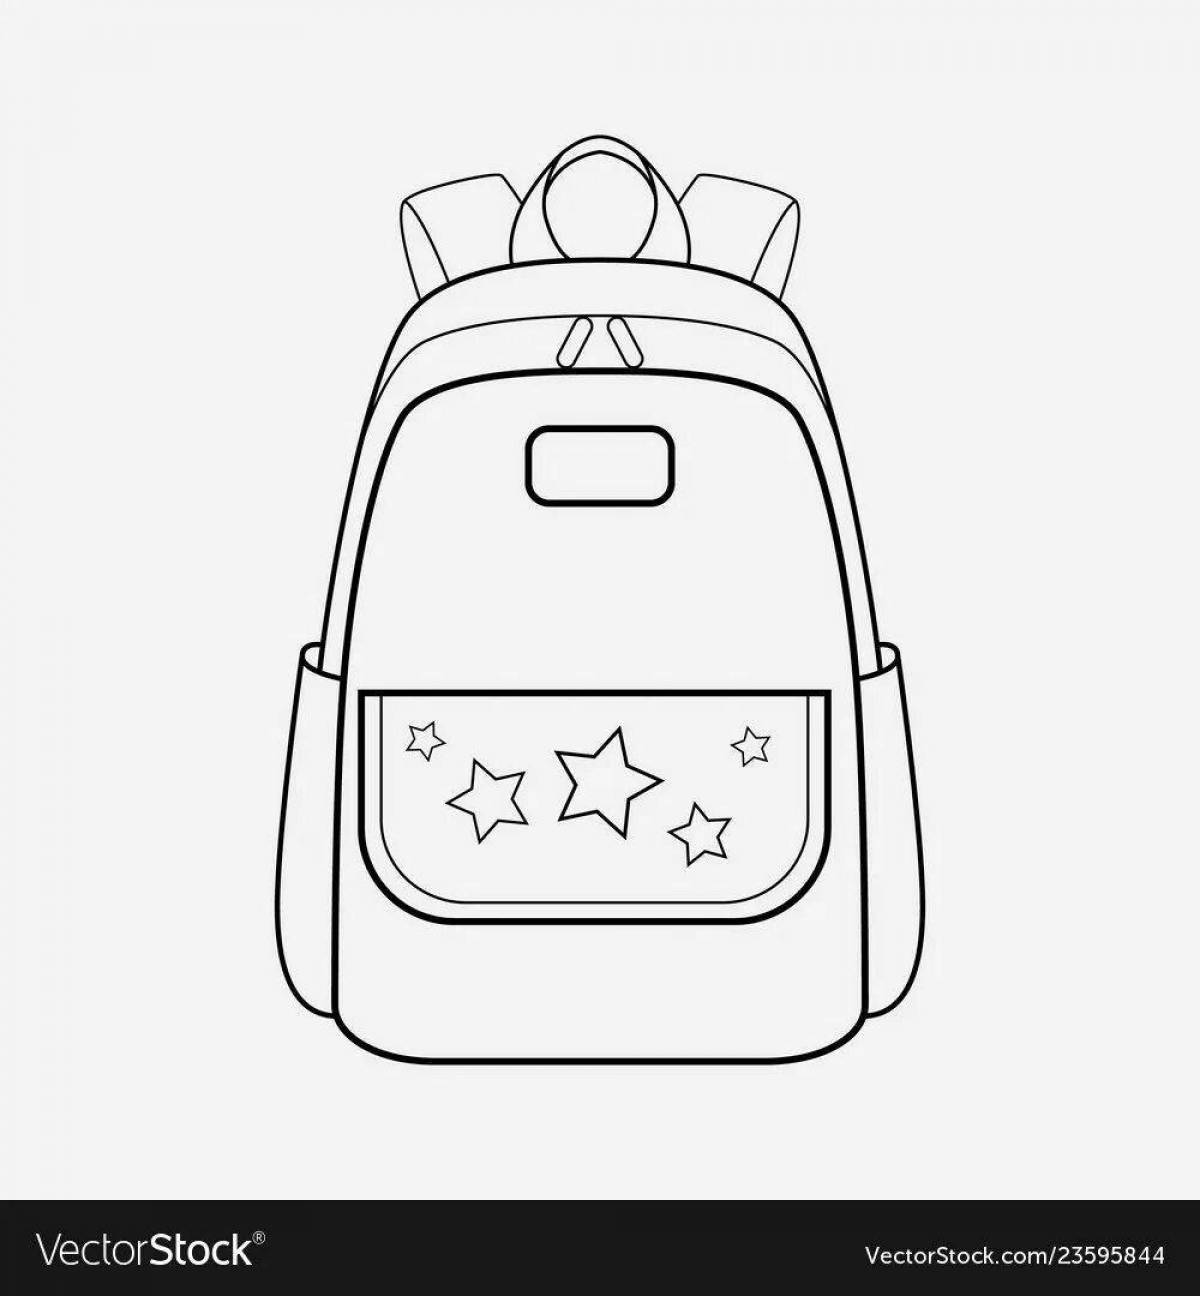 Toka luminous backpack coloring page